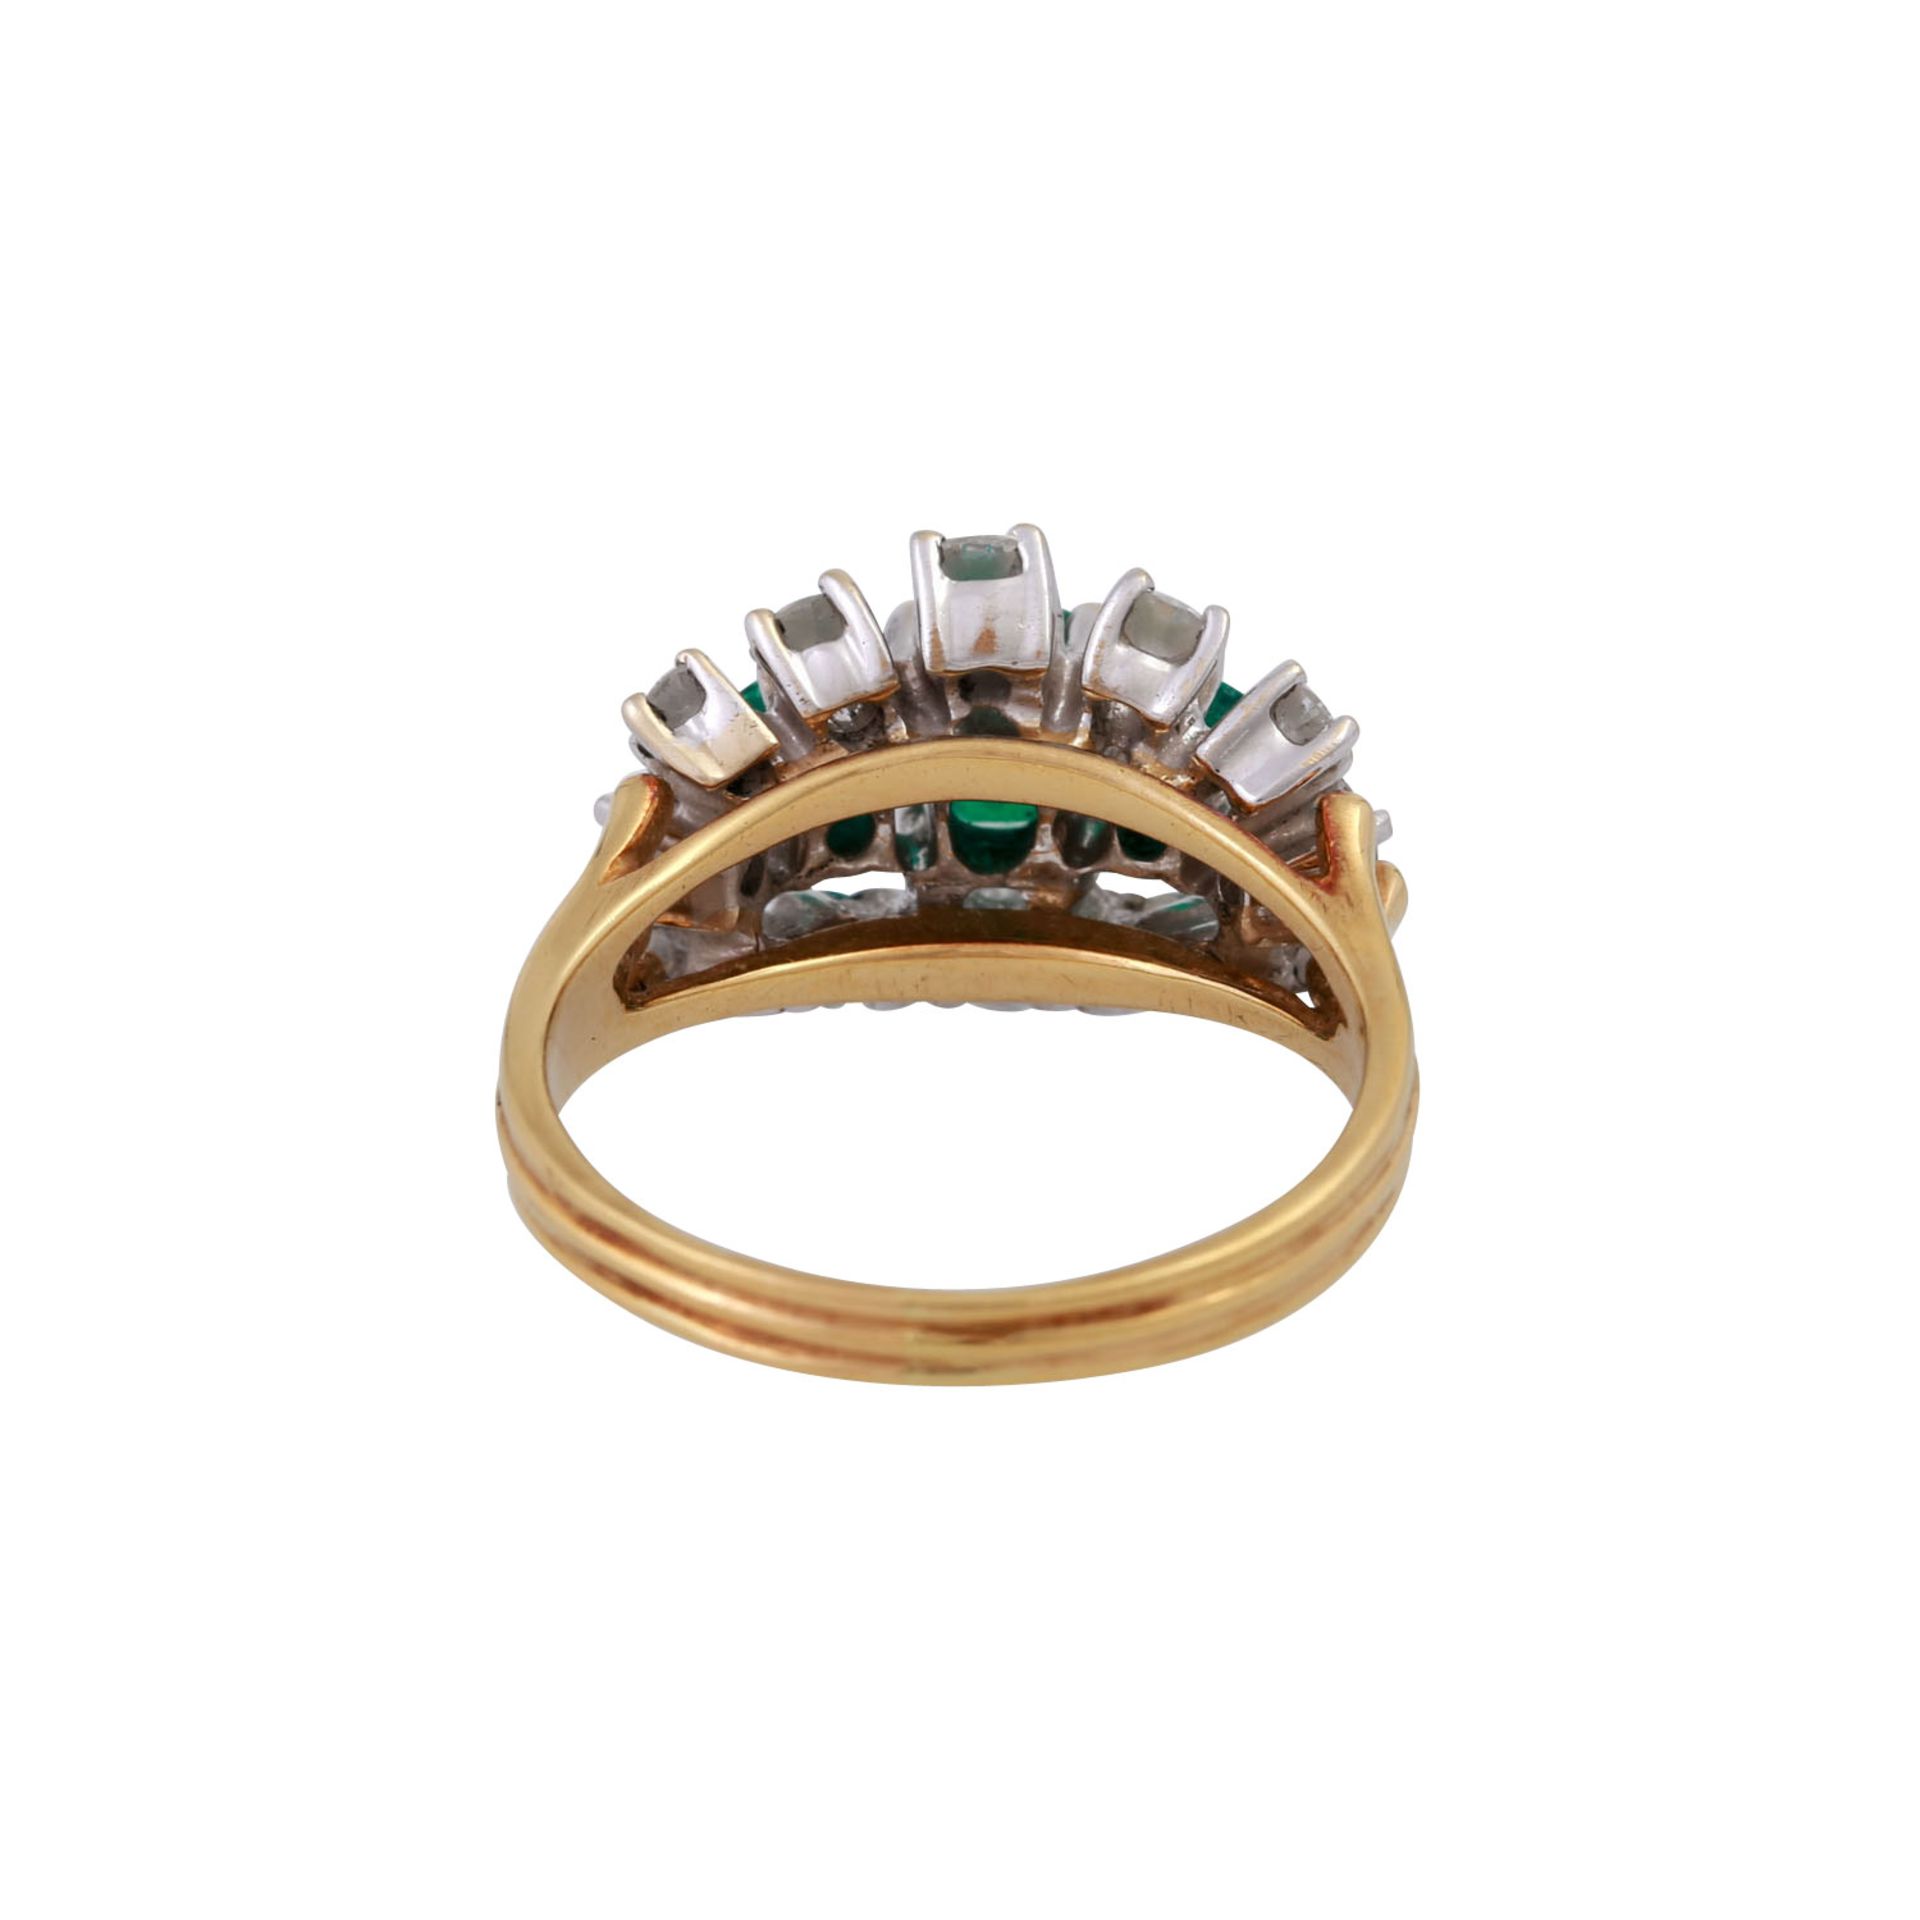 Ring mit 3 Smaragden und 12 Brillanten, zus. ca. 1 ct,guter Farb- und Reinheitsgrad, Anordnung im - Bild 4 aus 5